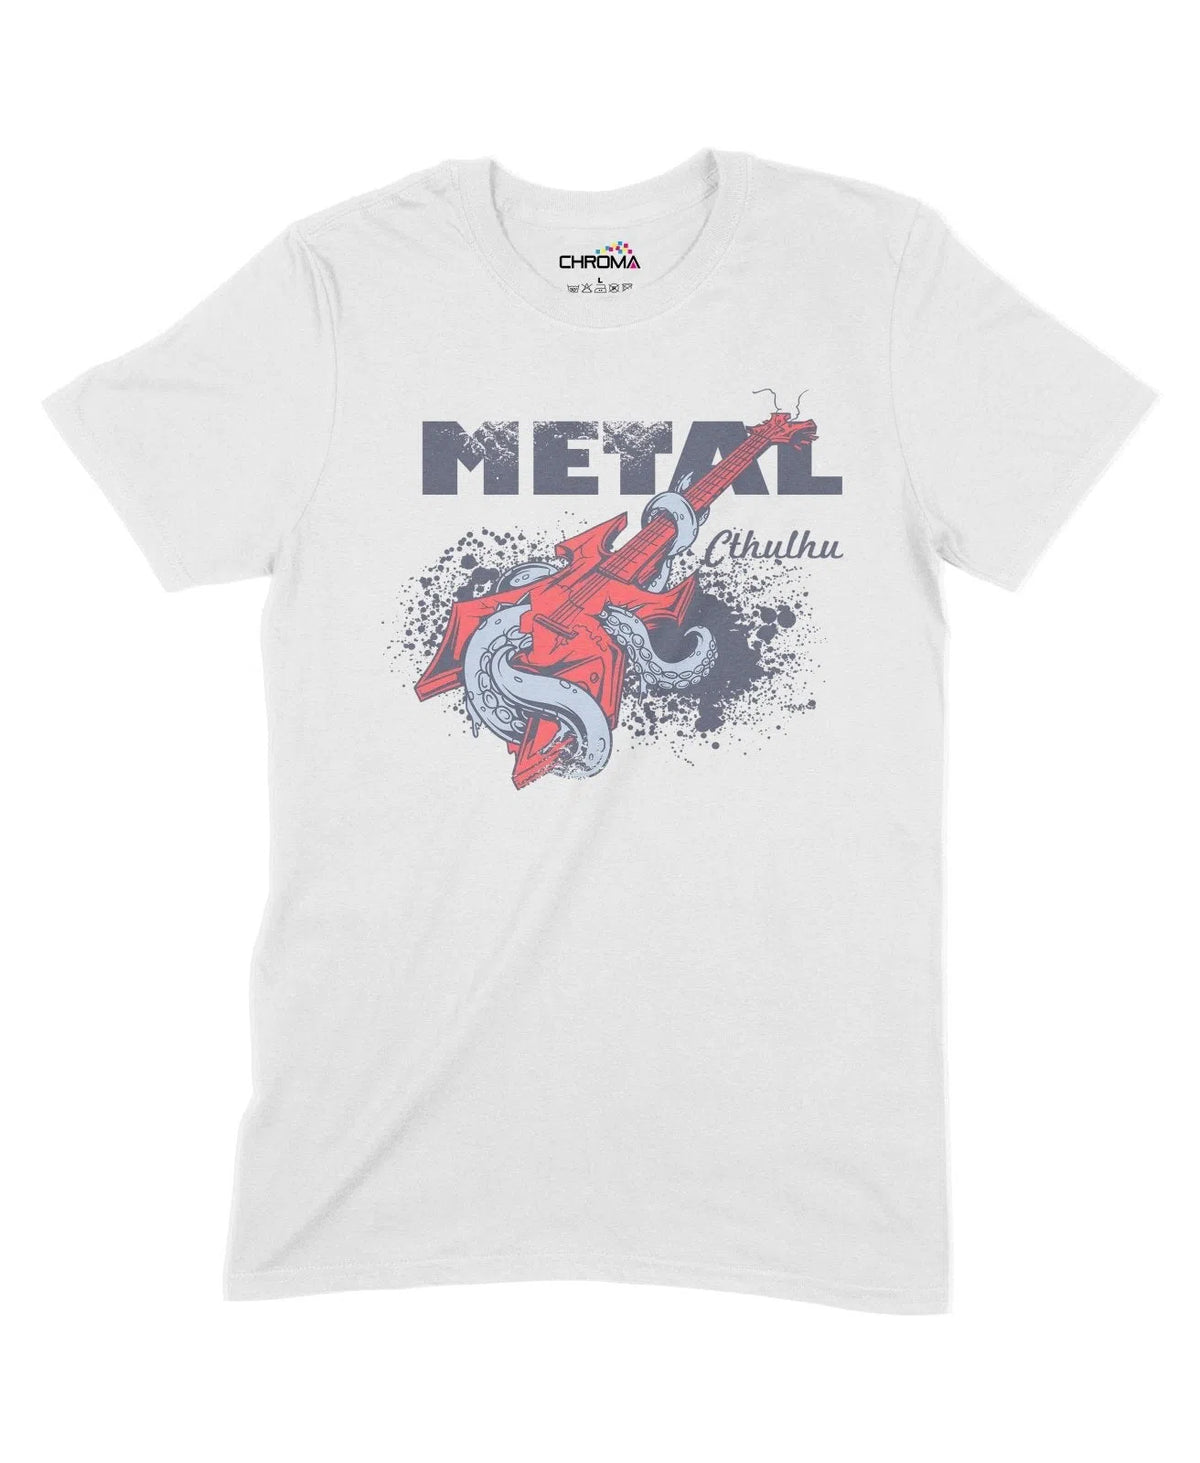 Metal Cthulhu Unisex Adult T-Shirt Chroma Clothing